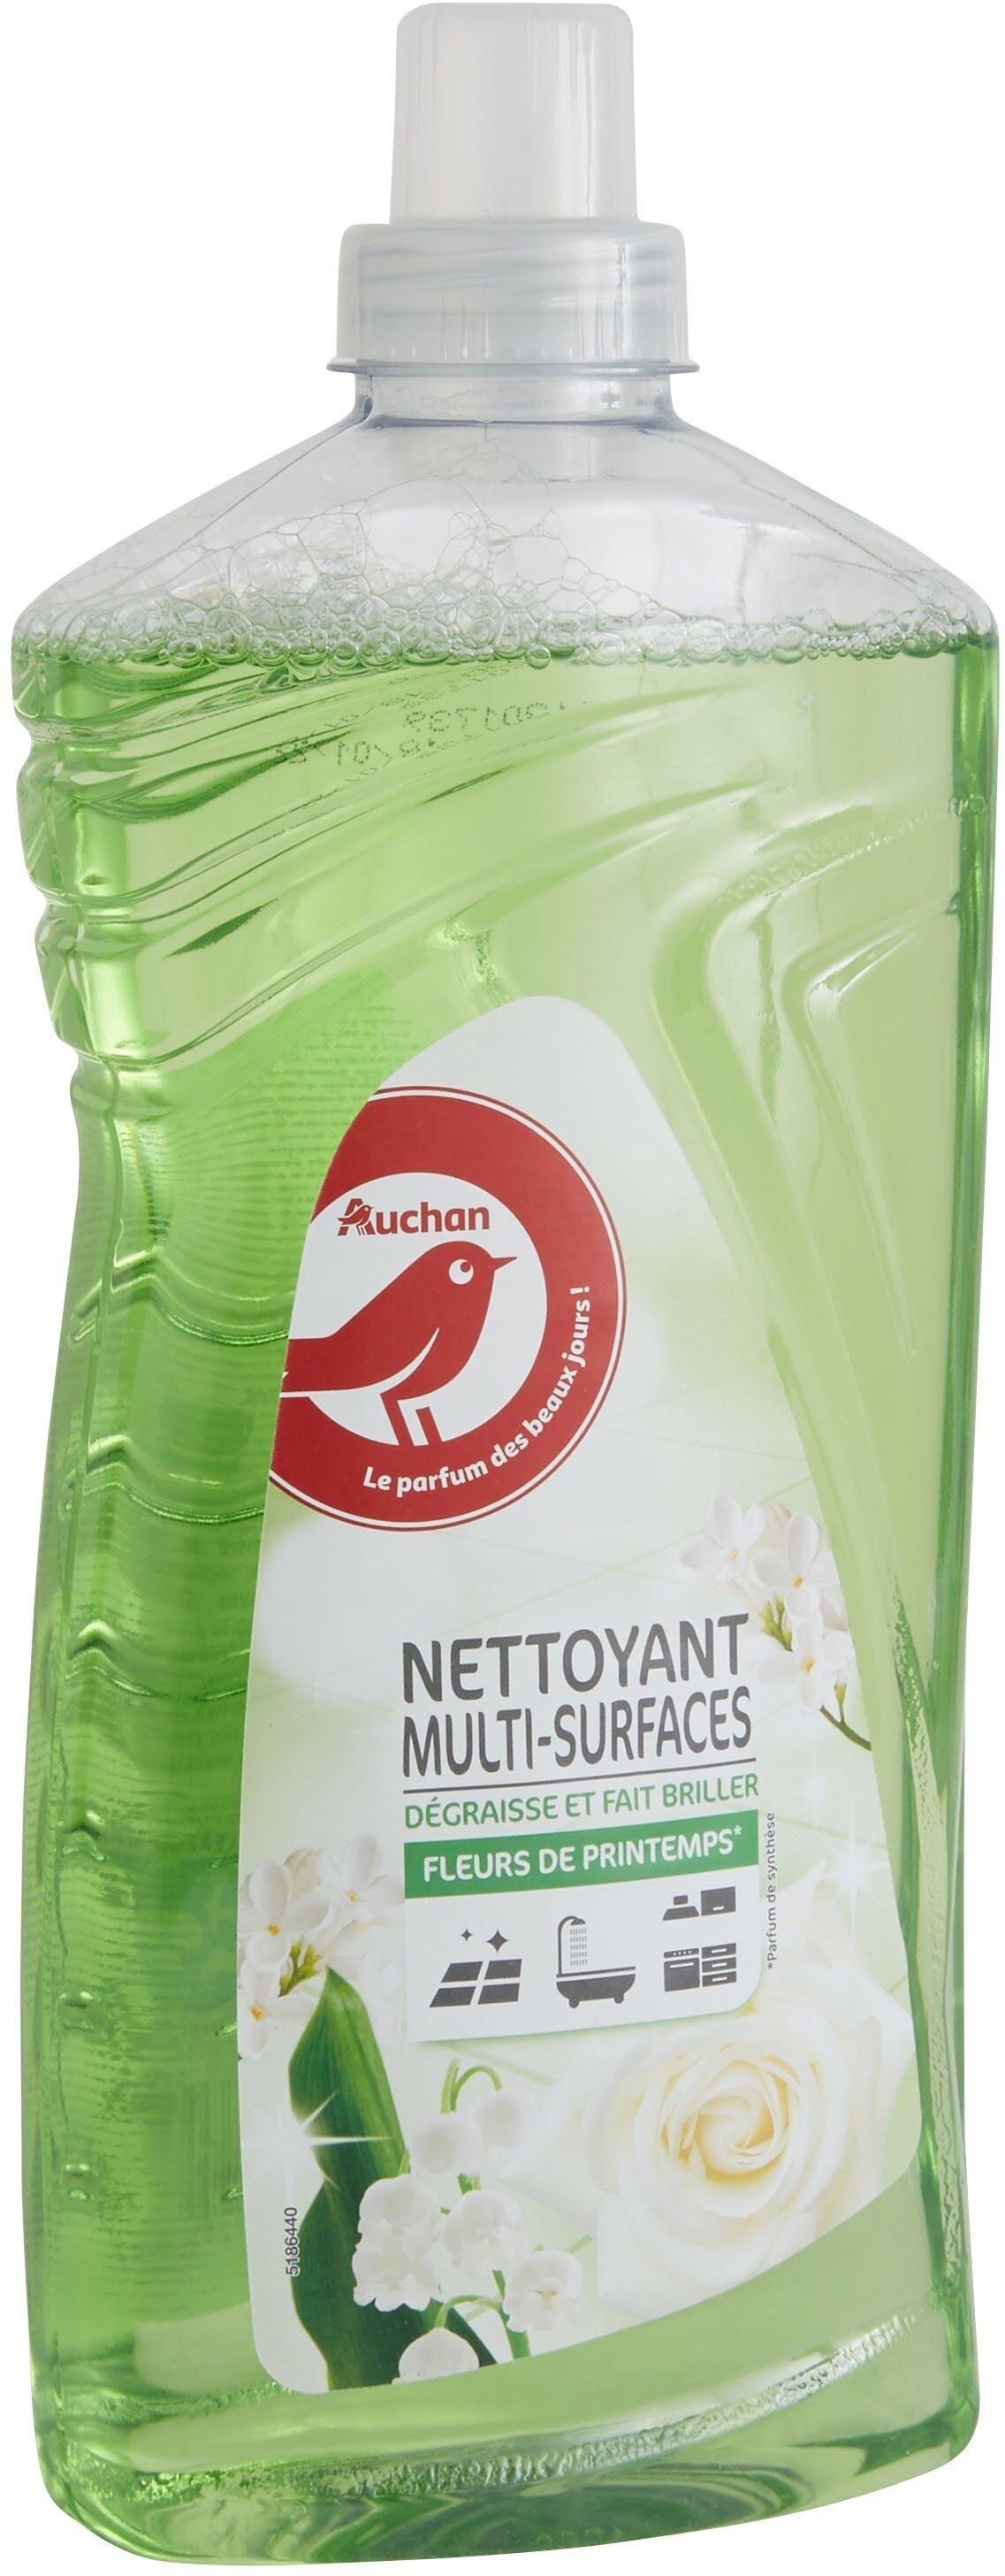 Nettoyant multi-surfaces - Produit - fr